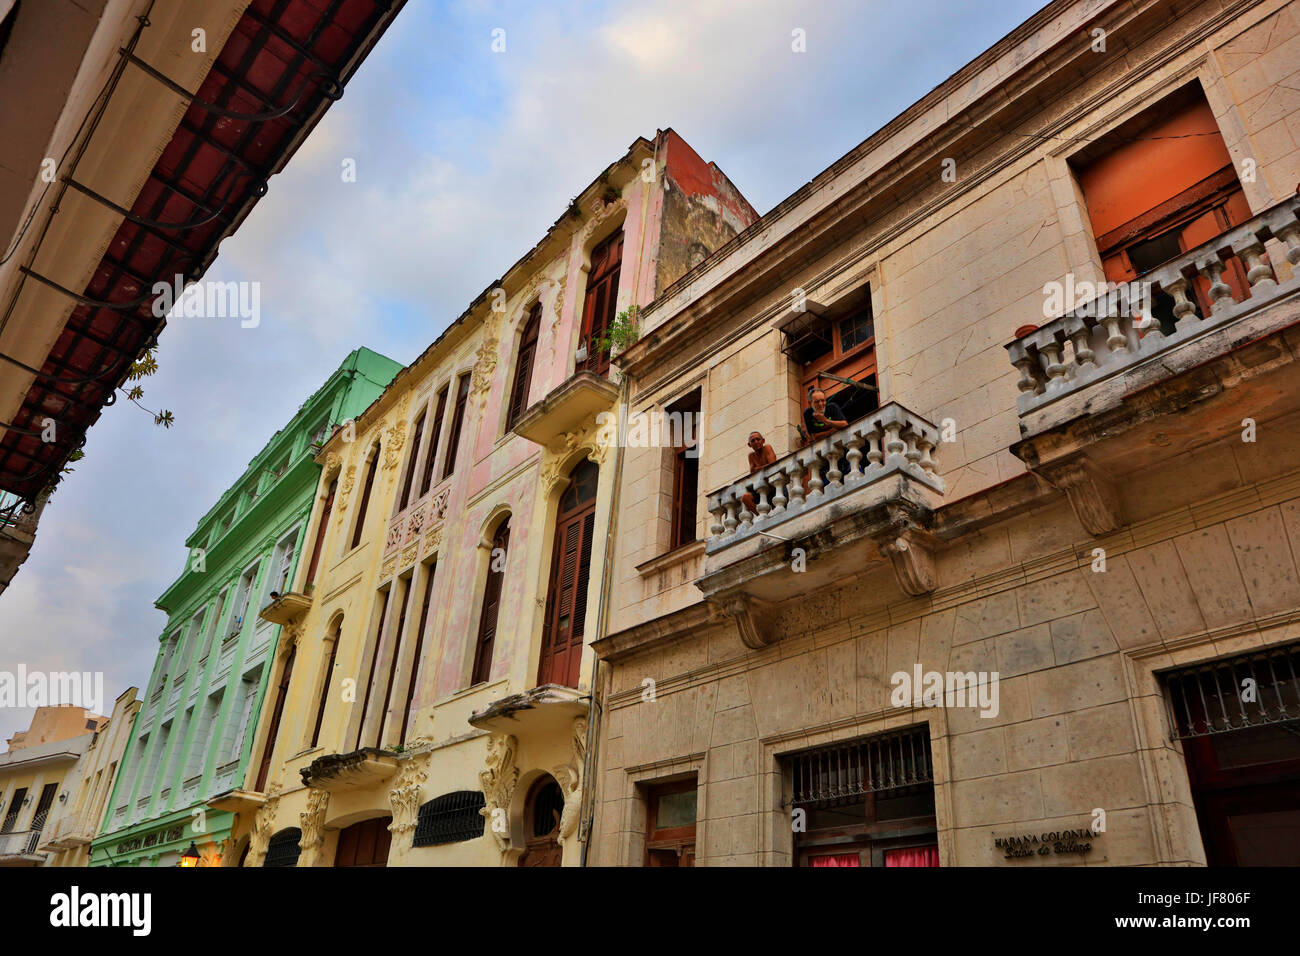 L'architecture historique entoure la Plaza Vieja de la Vieille Havane, LA HAVANE, CUBA Banque D'Images